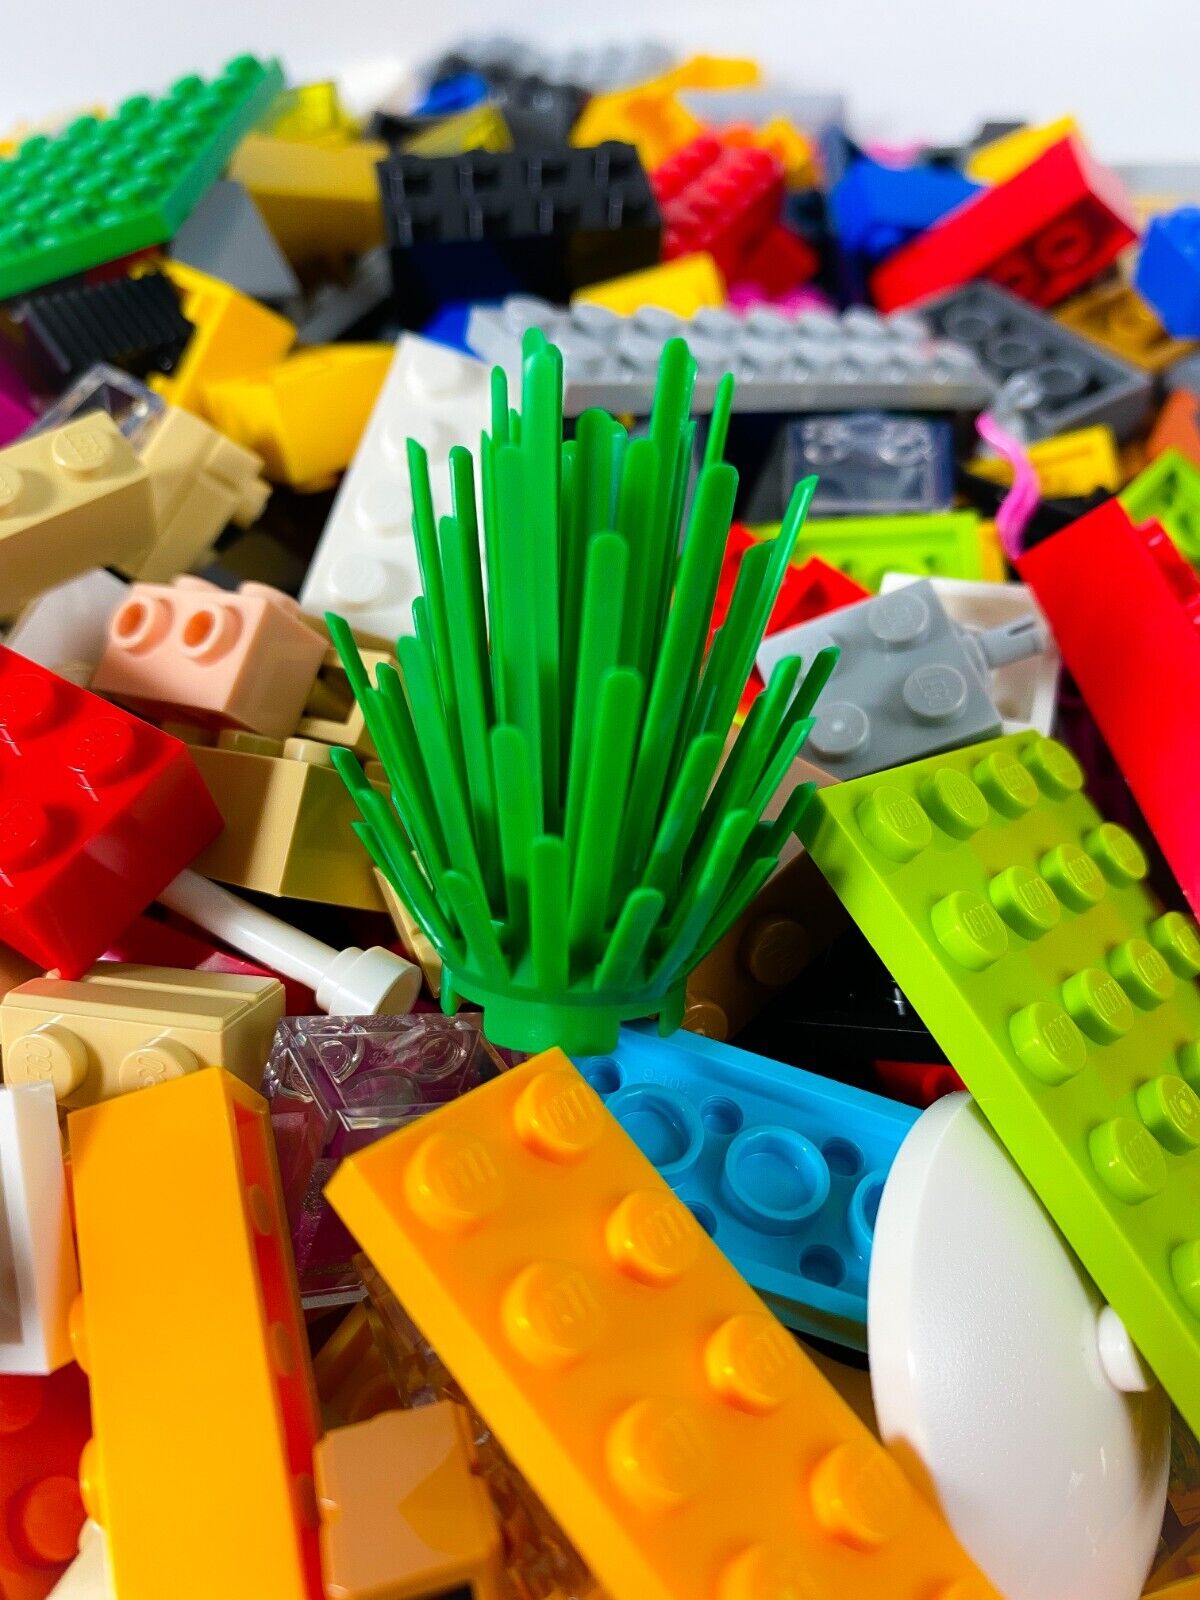 Klocki LEGO® Specjalne Klocki Mieszane Wielokolorowe 400 gr.  400 NOWOŚĆ!  Ilość 400x